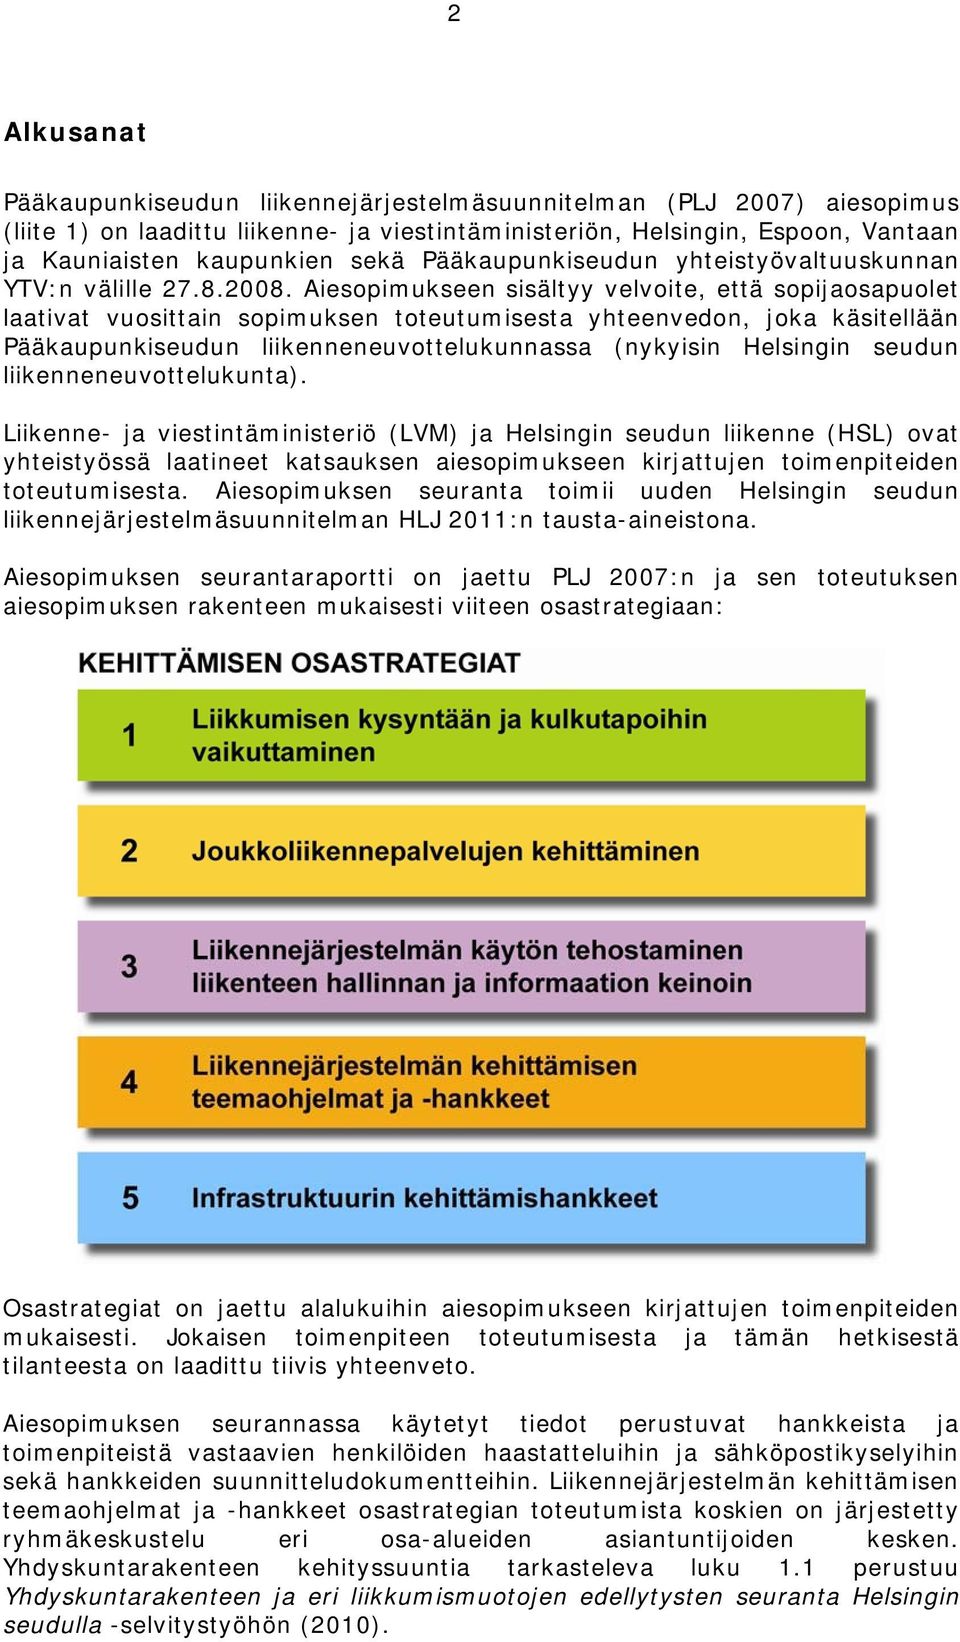 Aiesopimukseen sisältyy velvoite, että sopijaosapuolet laativat vuosittain sopimuksen toteutumisesta yhteenvedon, joka käsitellään Pääkaupunkiseudun liikenneneuvottelukunnassa (nykyisin Helsingin